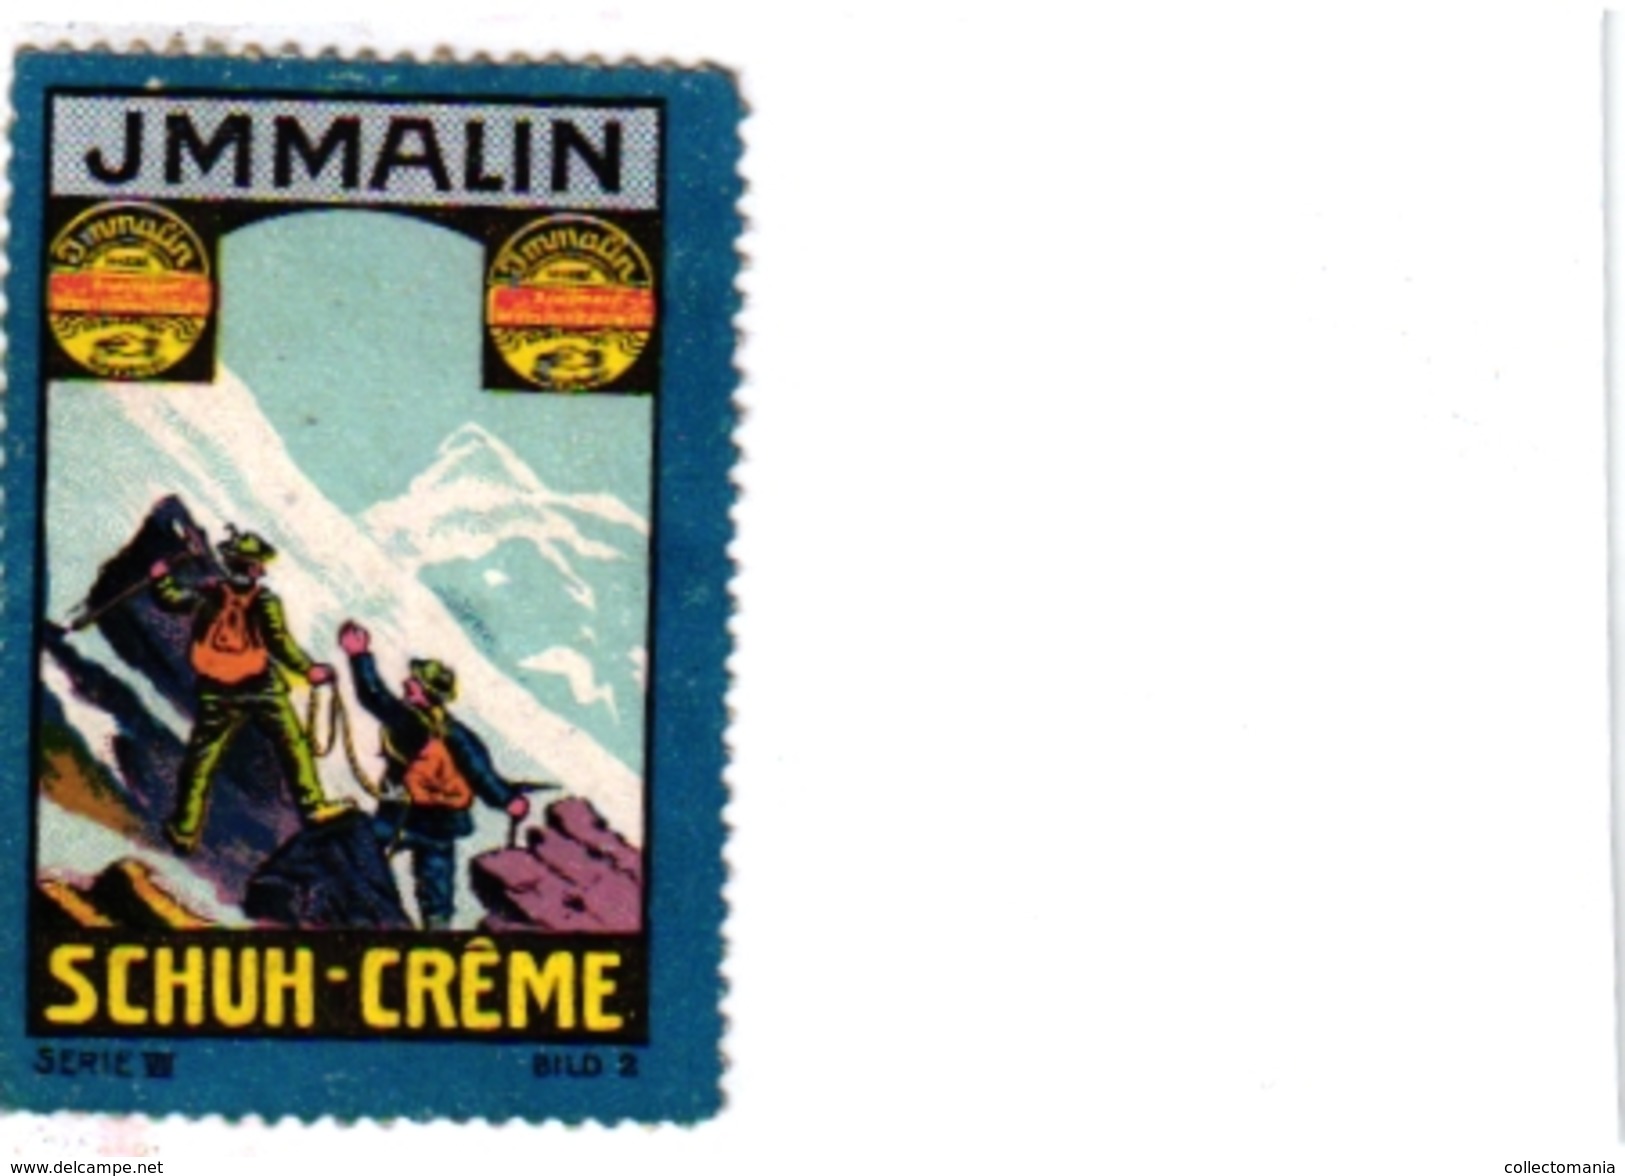 8 Poster Stamp Cinderella Reklame Marke Pub  ALPINISME Mountaineering Skiing Montagne =gebirgte Berg Climbing Klimmen VG - Sport Invernali